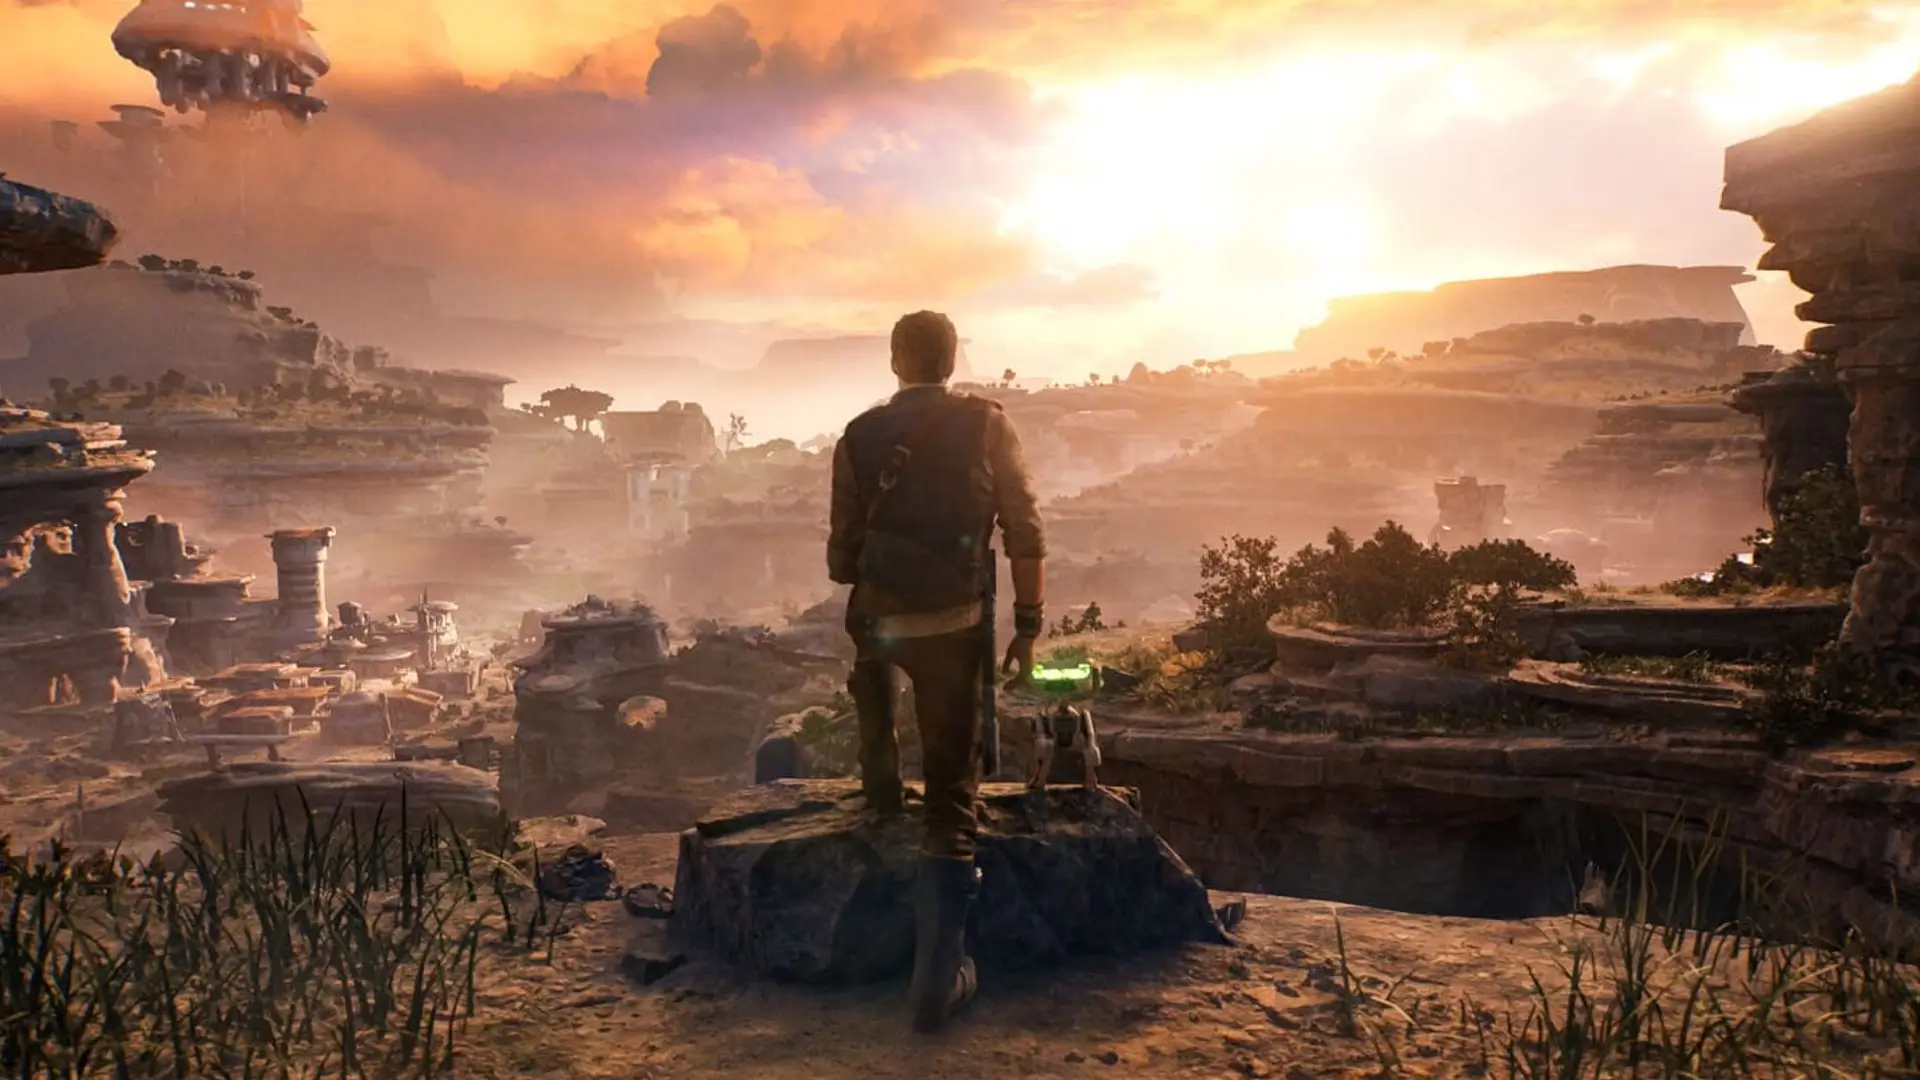 Captura del juego Star Wars Jedi Survivor con su protaogonista andando en un paisaje rocoso